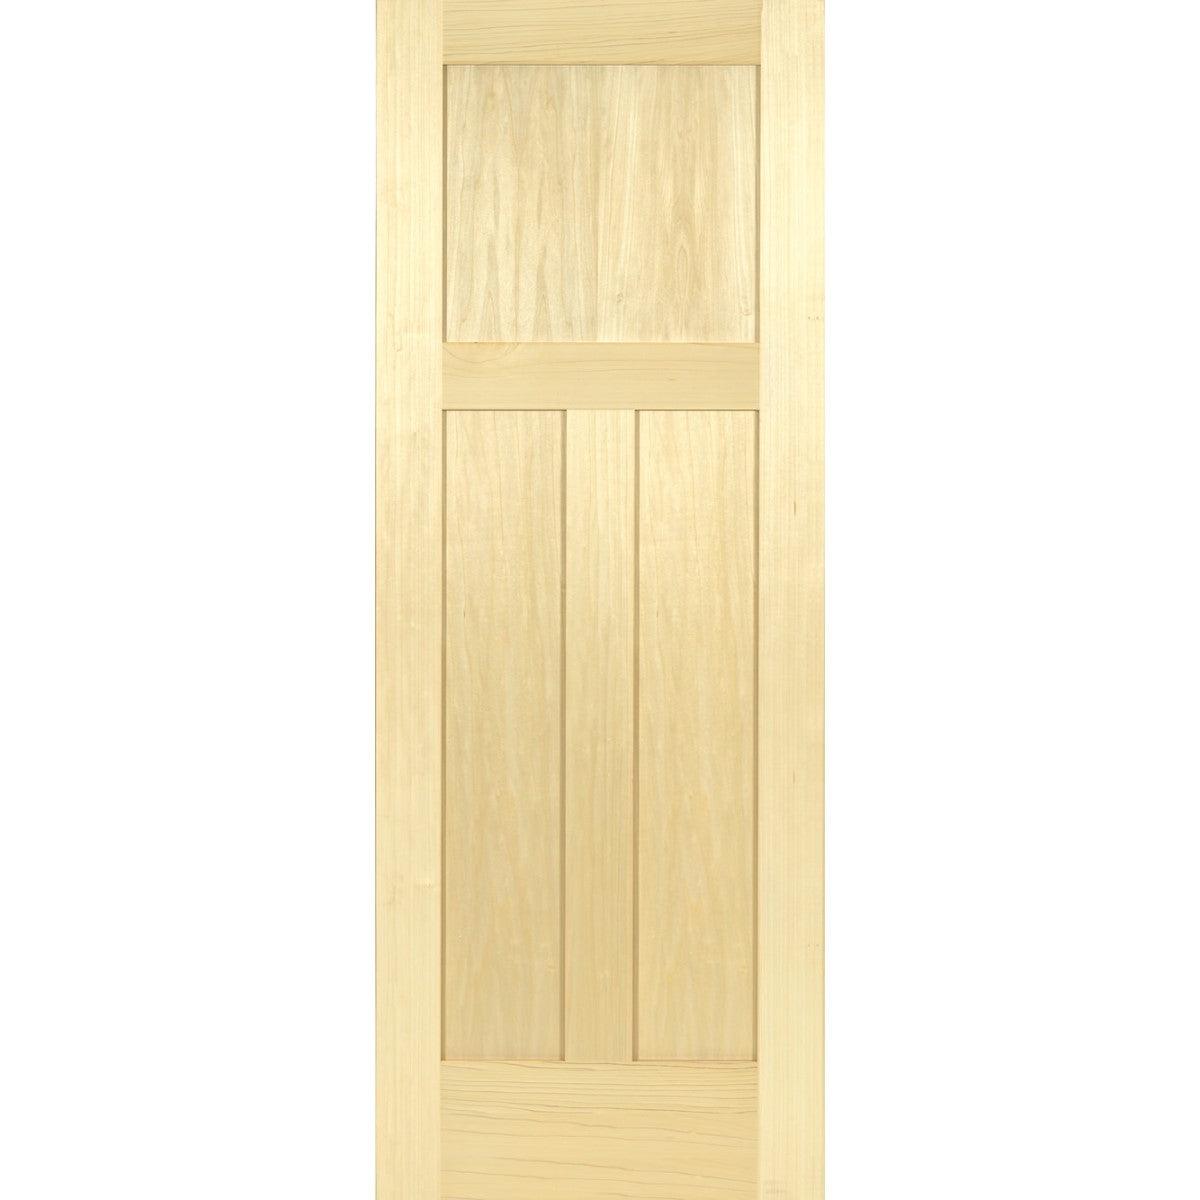 Poplar Interior Door Slab (3 Panel Craftsman) - Pease Doors: The Door Store